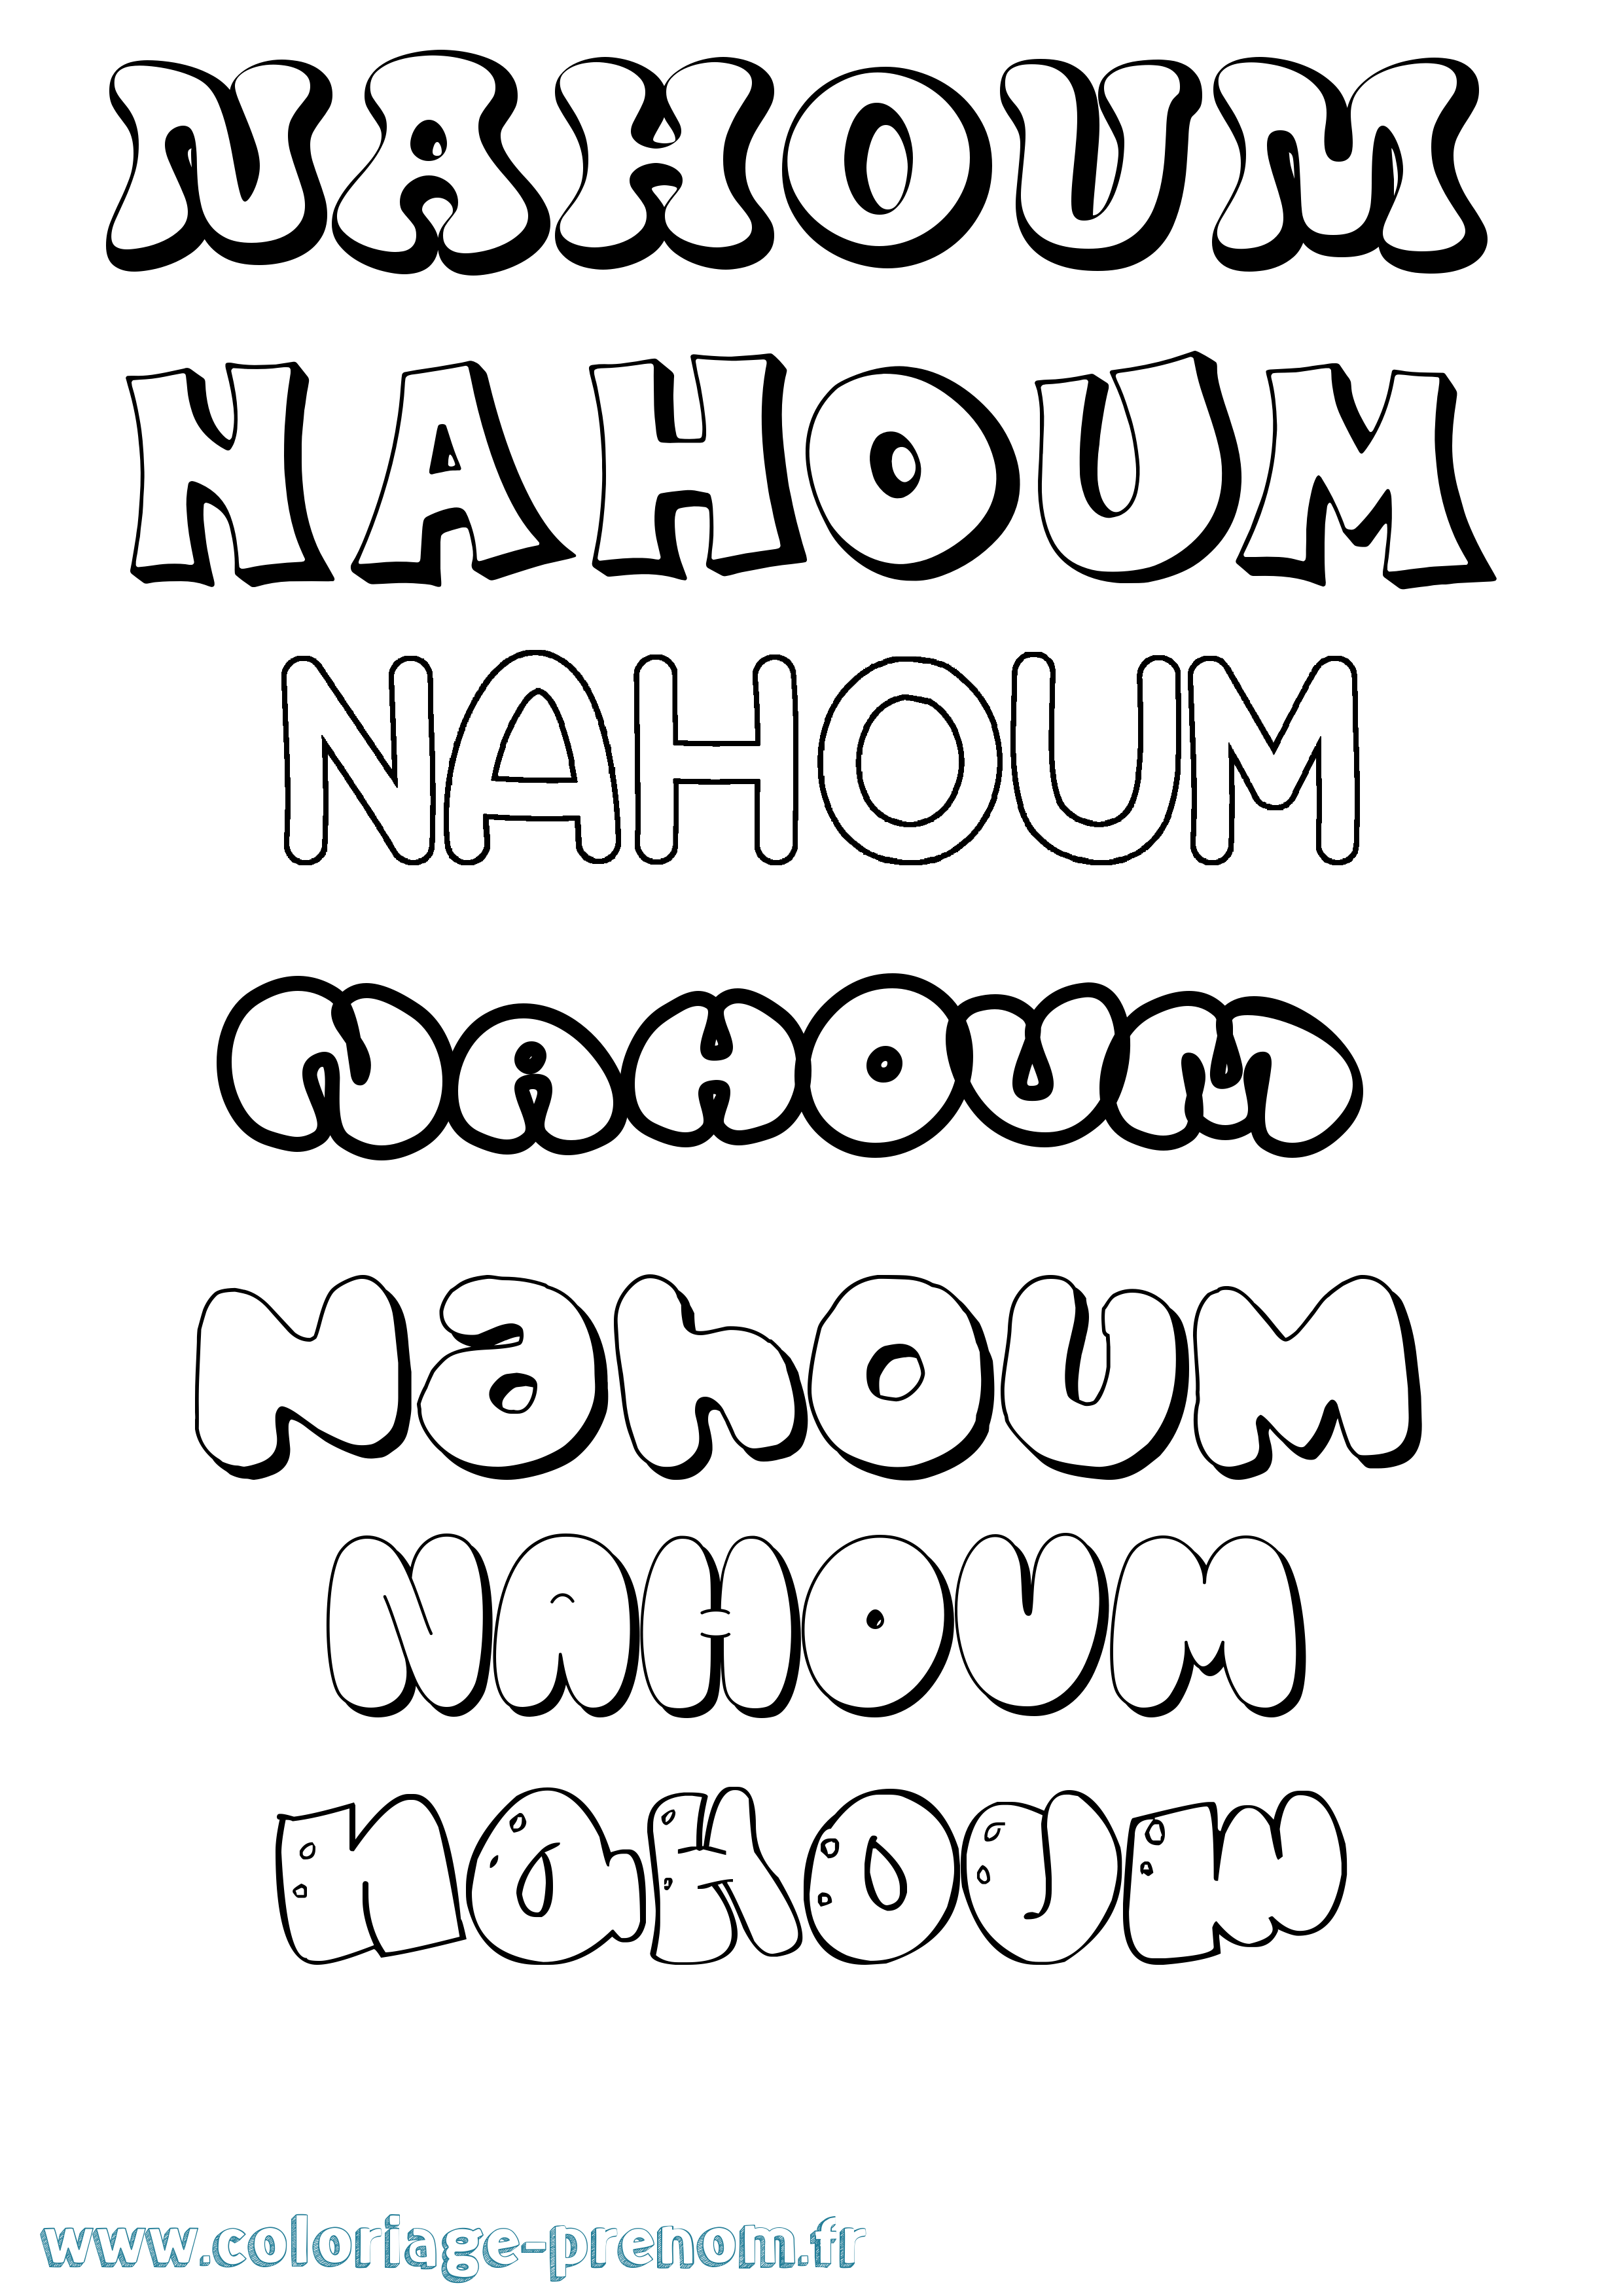 Coloriage prénom Nahoum Bubble